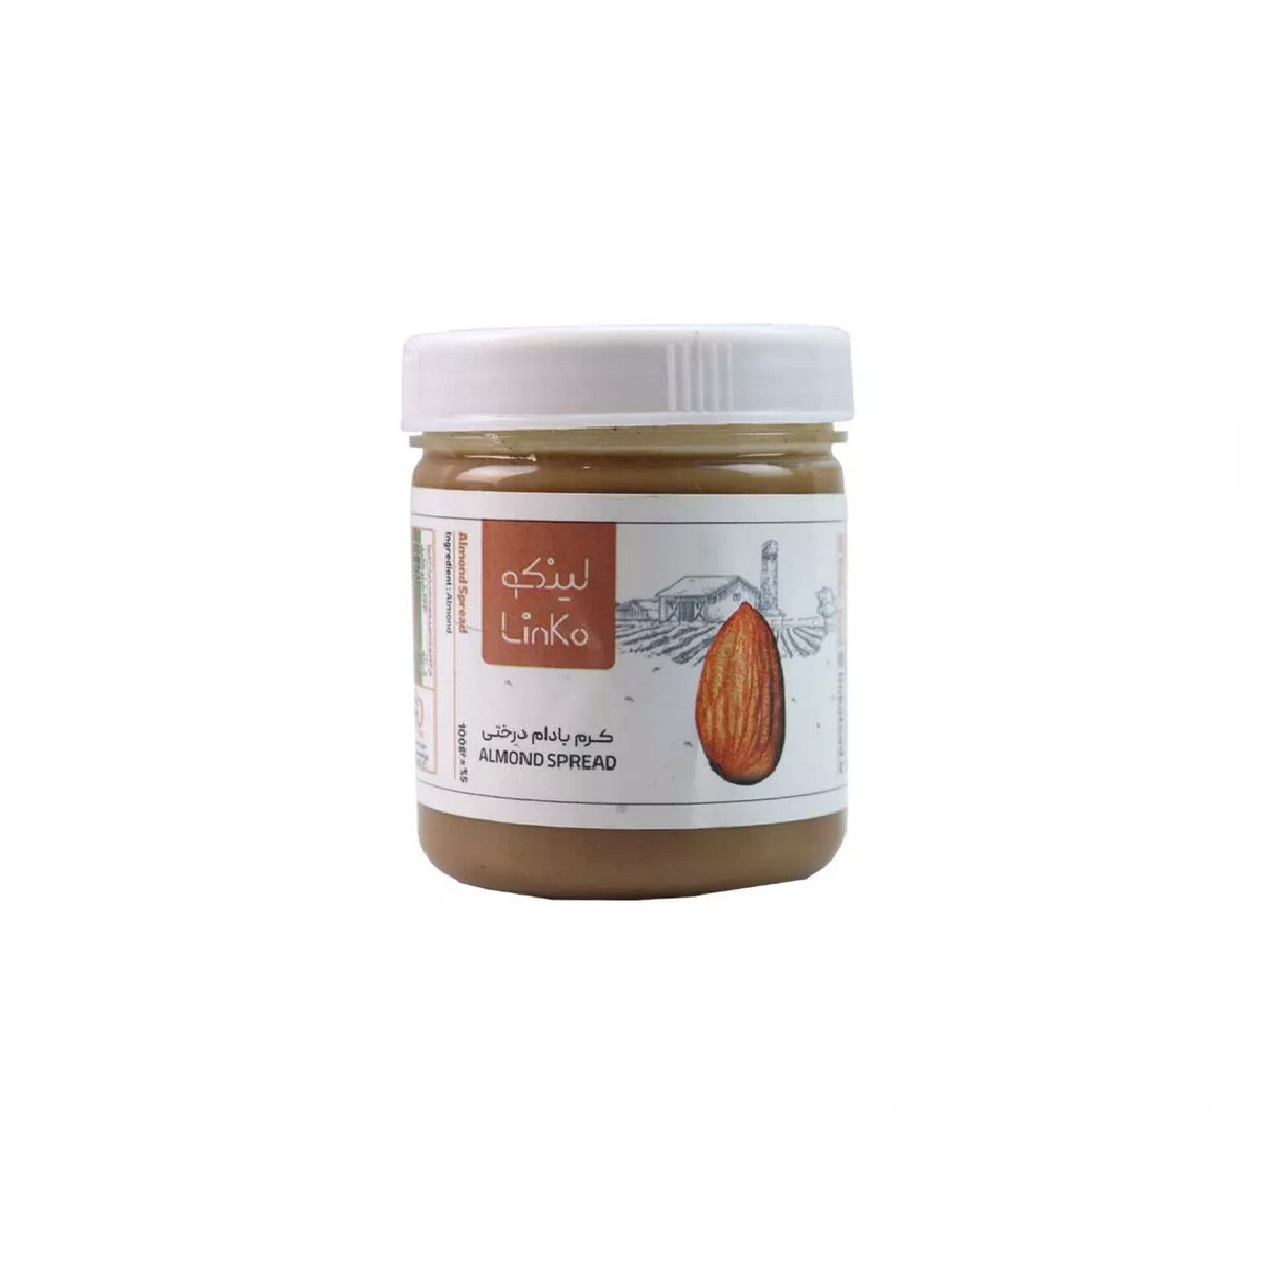 کره بادام درختی بدون شکر لینکو - 100 گرم